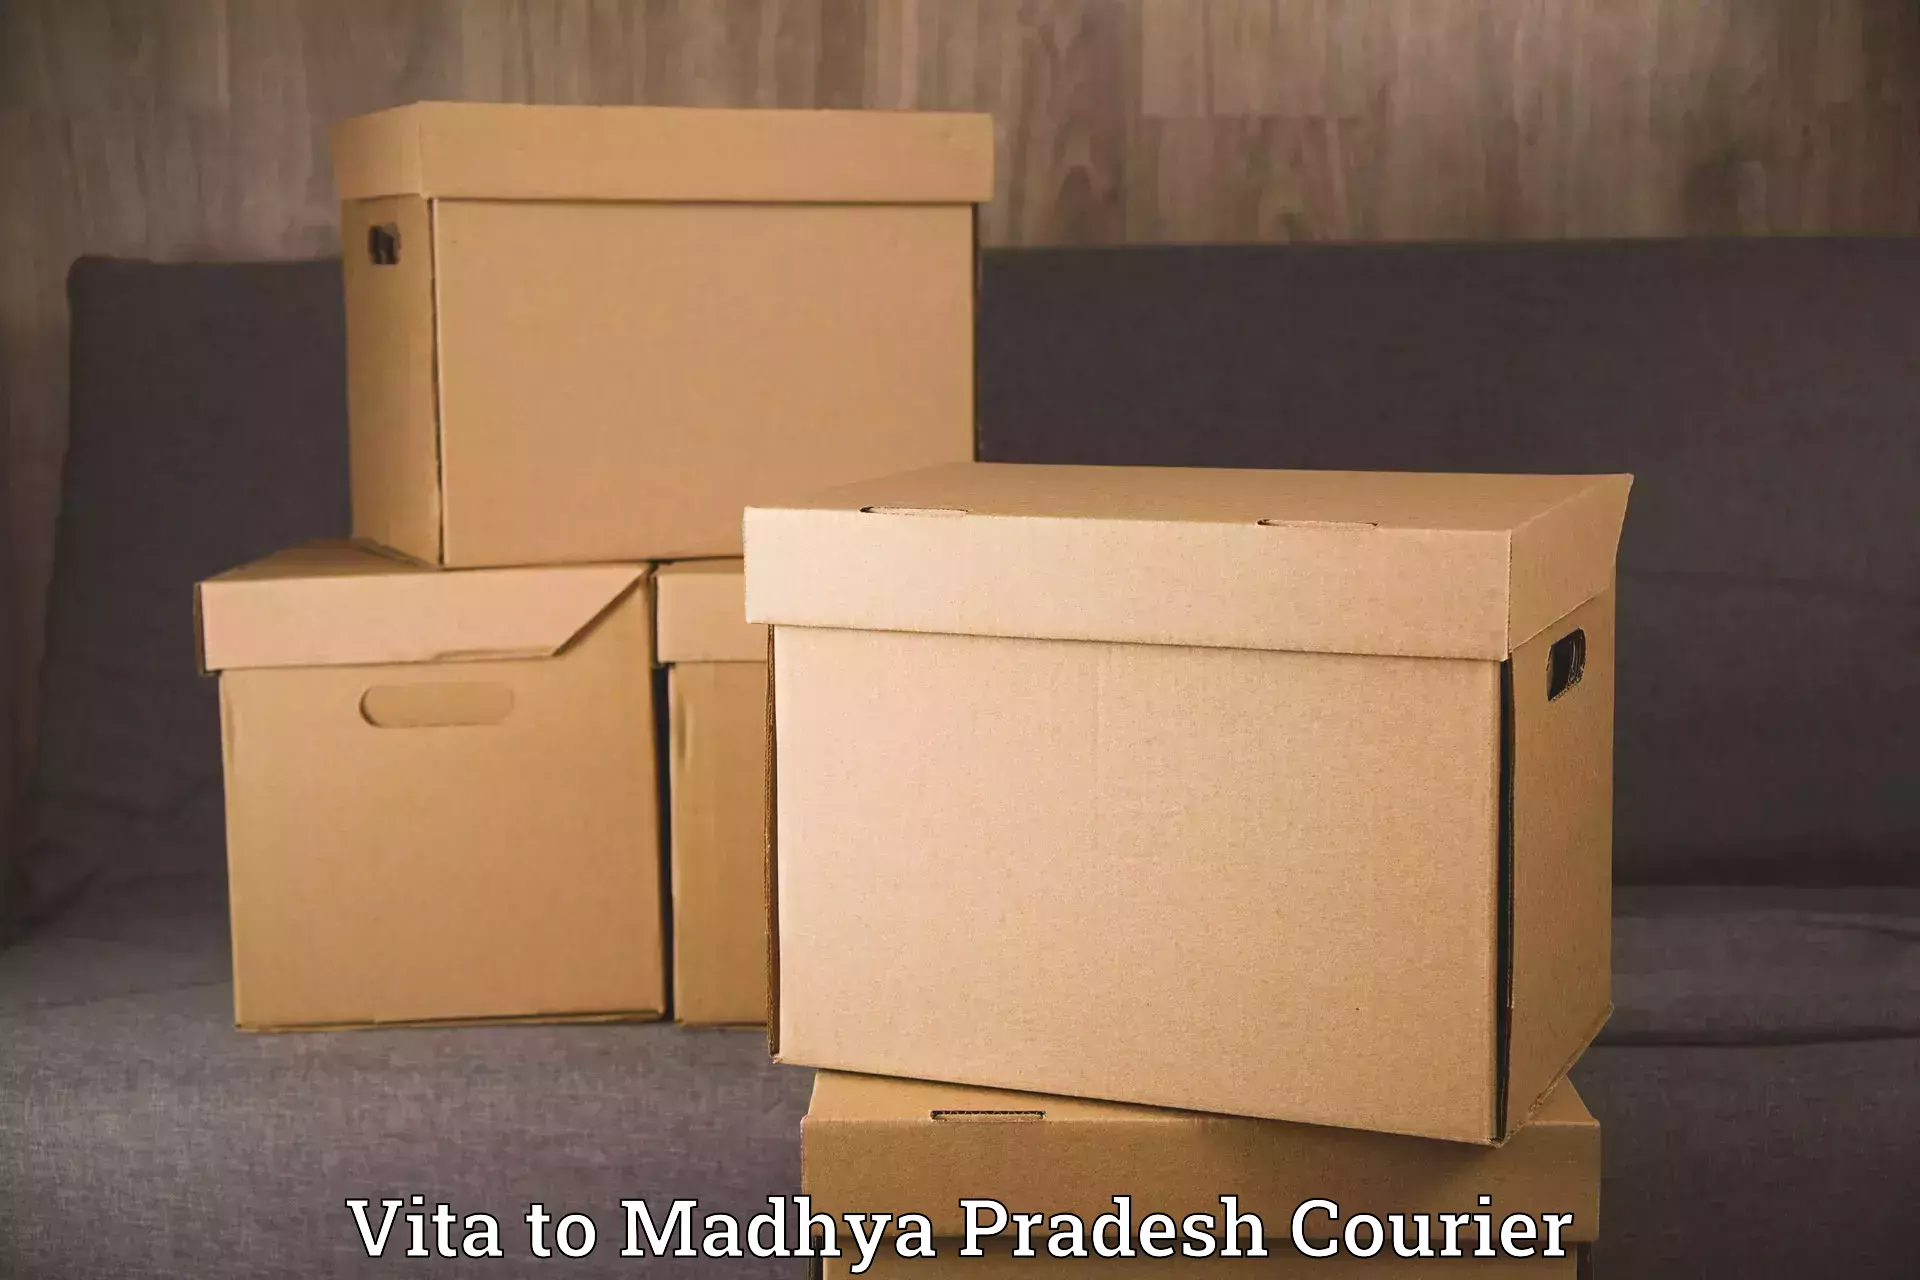 Efficient packing and moving Vita to Nainpur